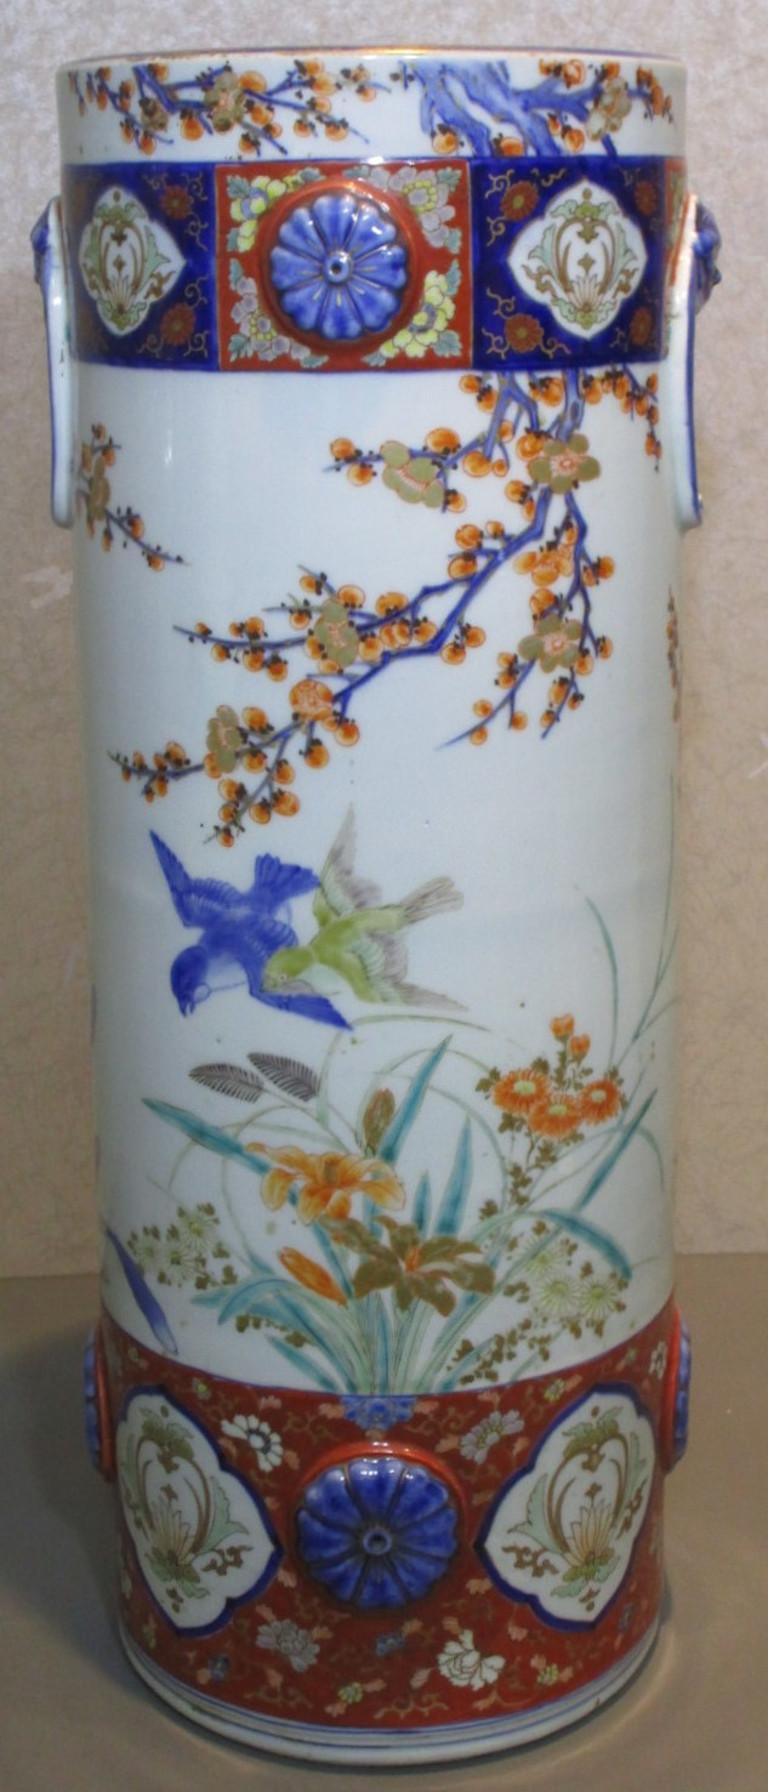 Exceptionnel grand vase japonais en porcelaine Imari de la période Fukagawa Meiji en rouge fer, bleu cobalt et vert sur un corps en porcelaine aux formes étonnantes. Fukagawa Eizaemon a créé la société Koransha (orchidée parfumée) en 1875. Après sa